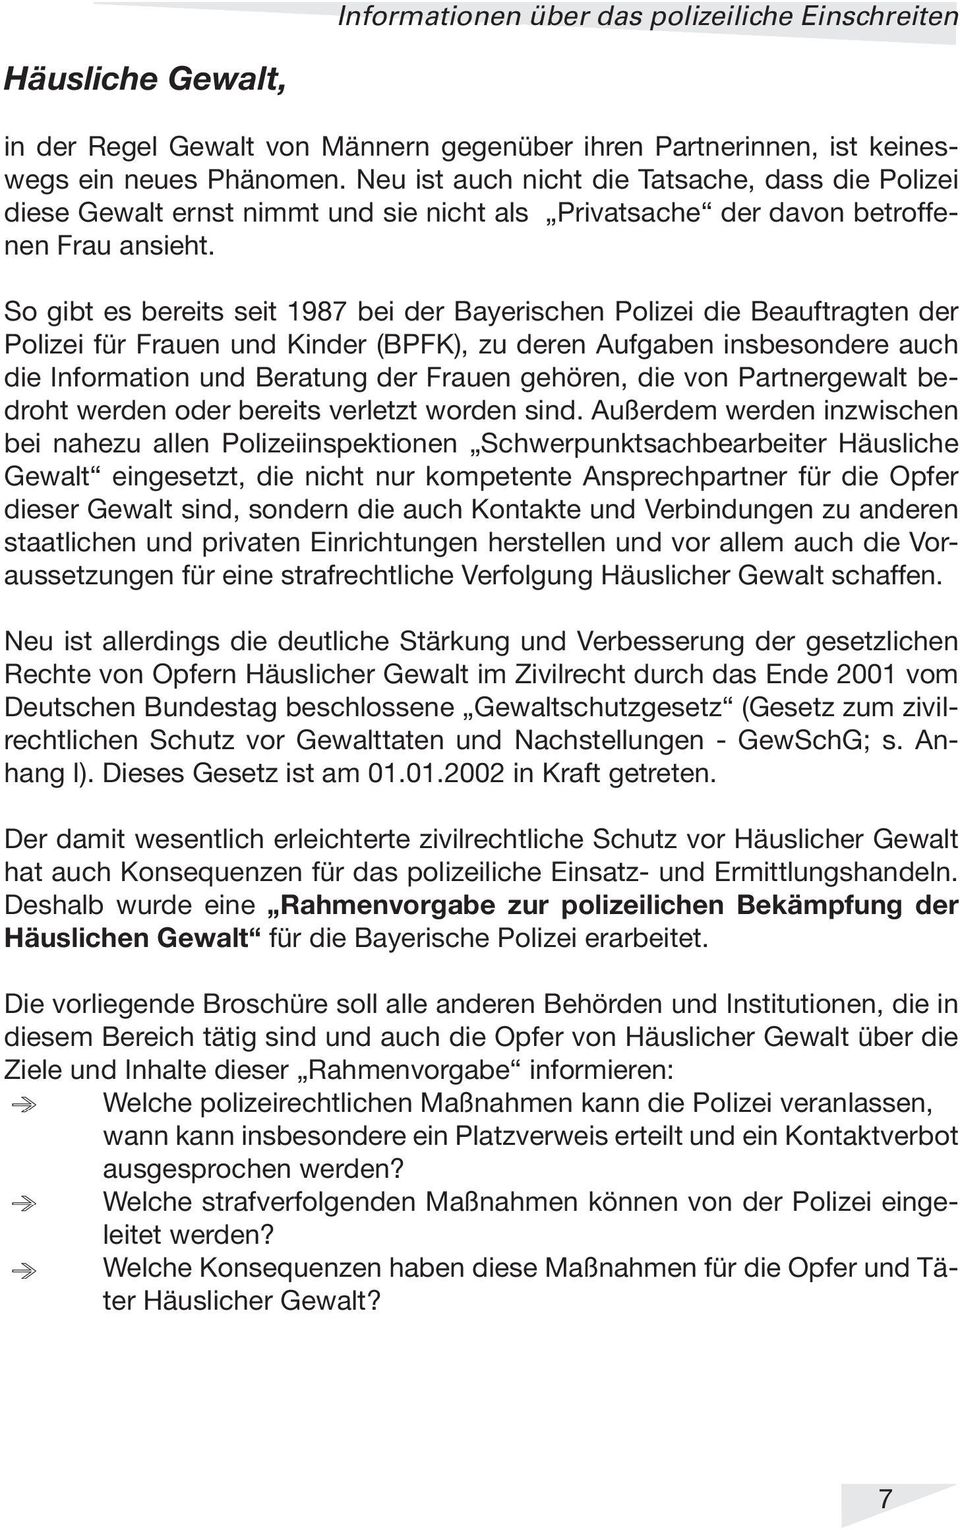 So gibt es bereits seit 1987 bei der Bayerischen Polizei die Beauftragten der Polizei für Frauen und Kinder (BPFK), zu deren Aufgaben insbesondere auch die Information und Beratung der Frauen